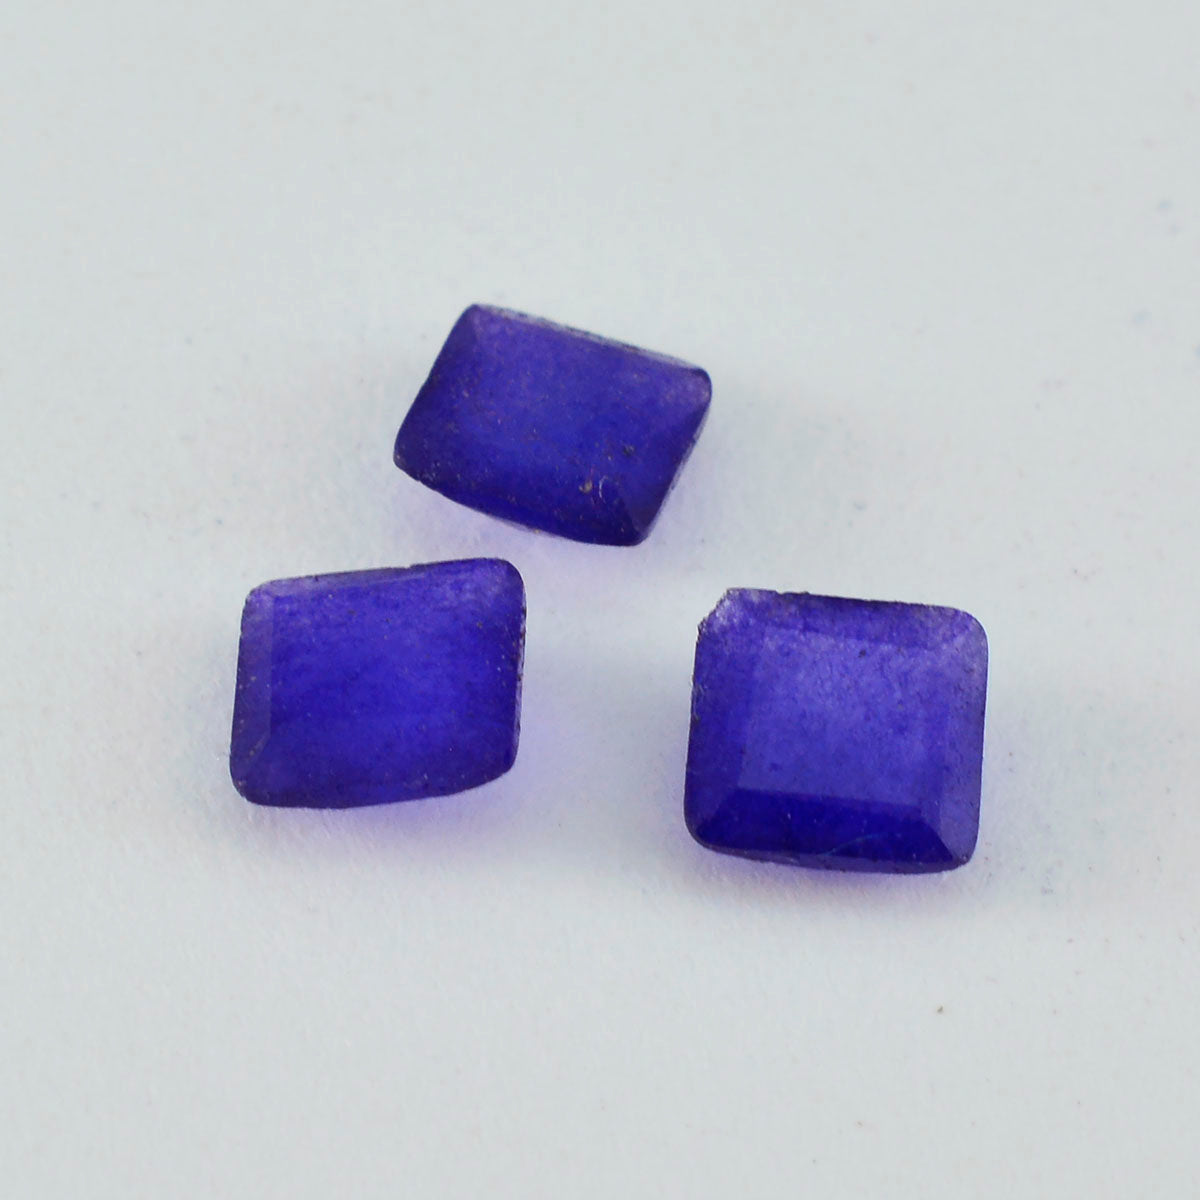 riyogems 1pc ナチュラル ブルー ジャスパー ファセット 10x10 mm 正方形の形状の見栄えの良い品質の宝石